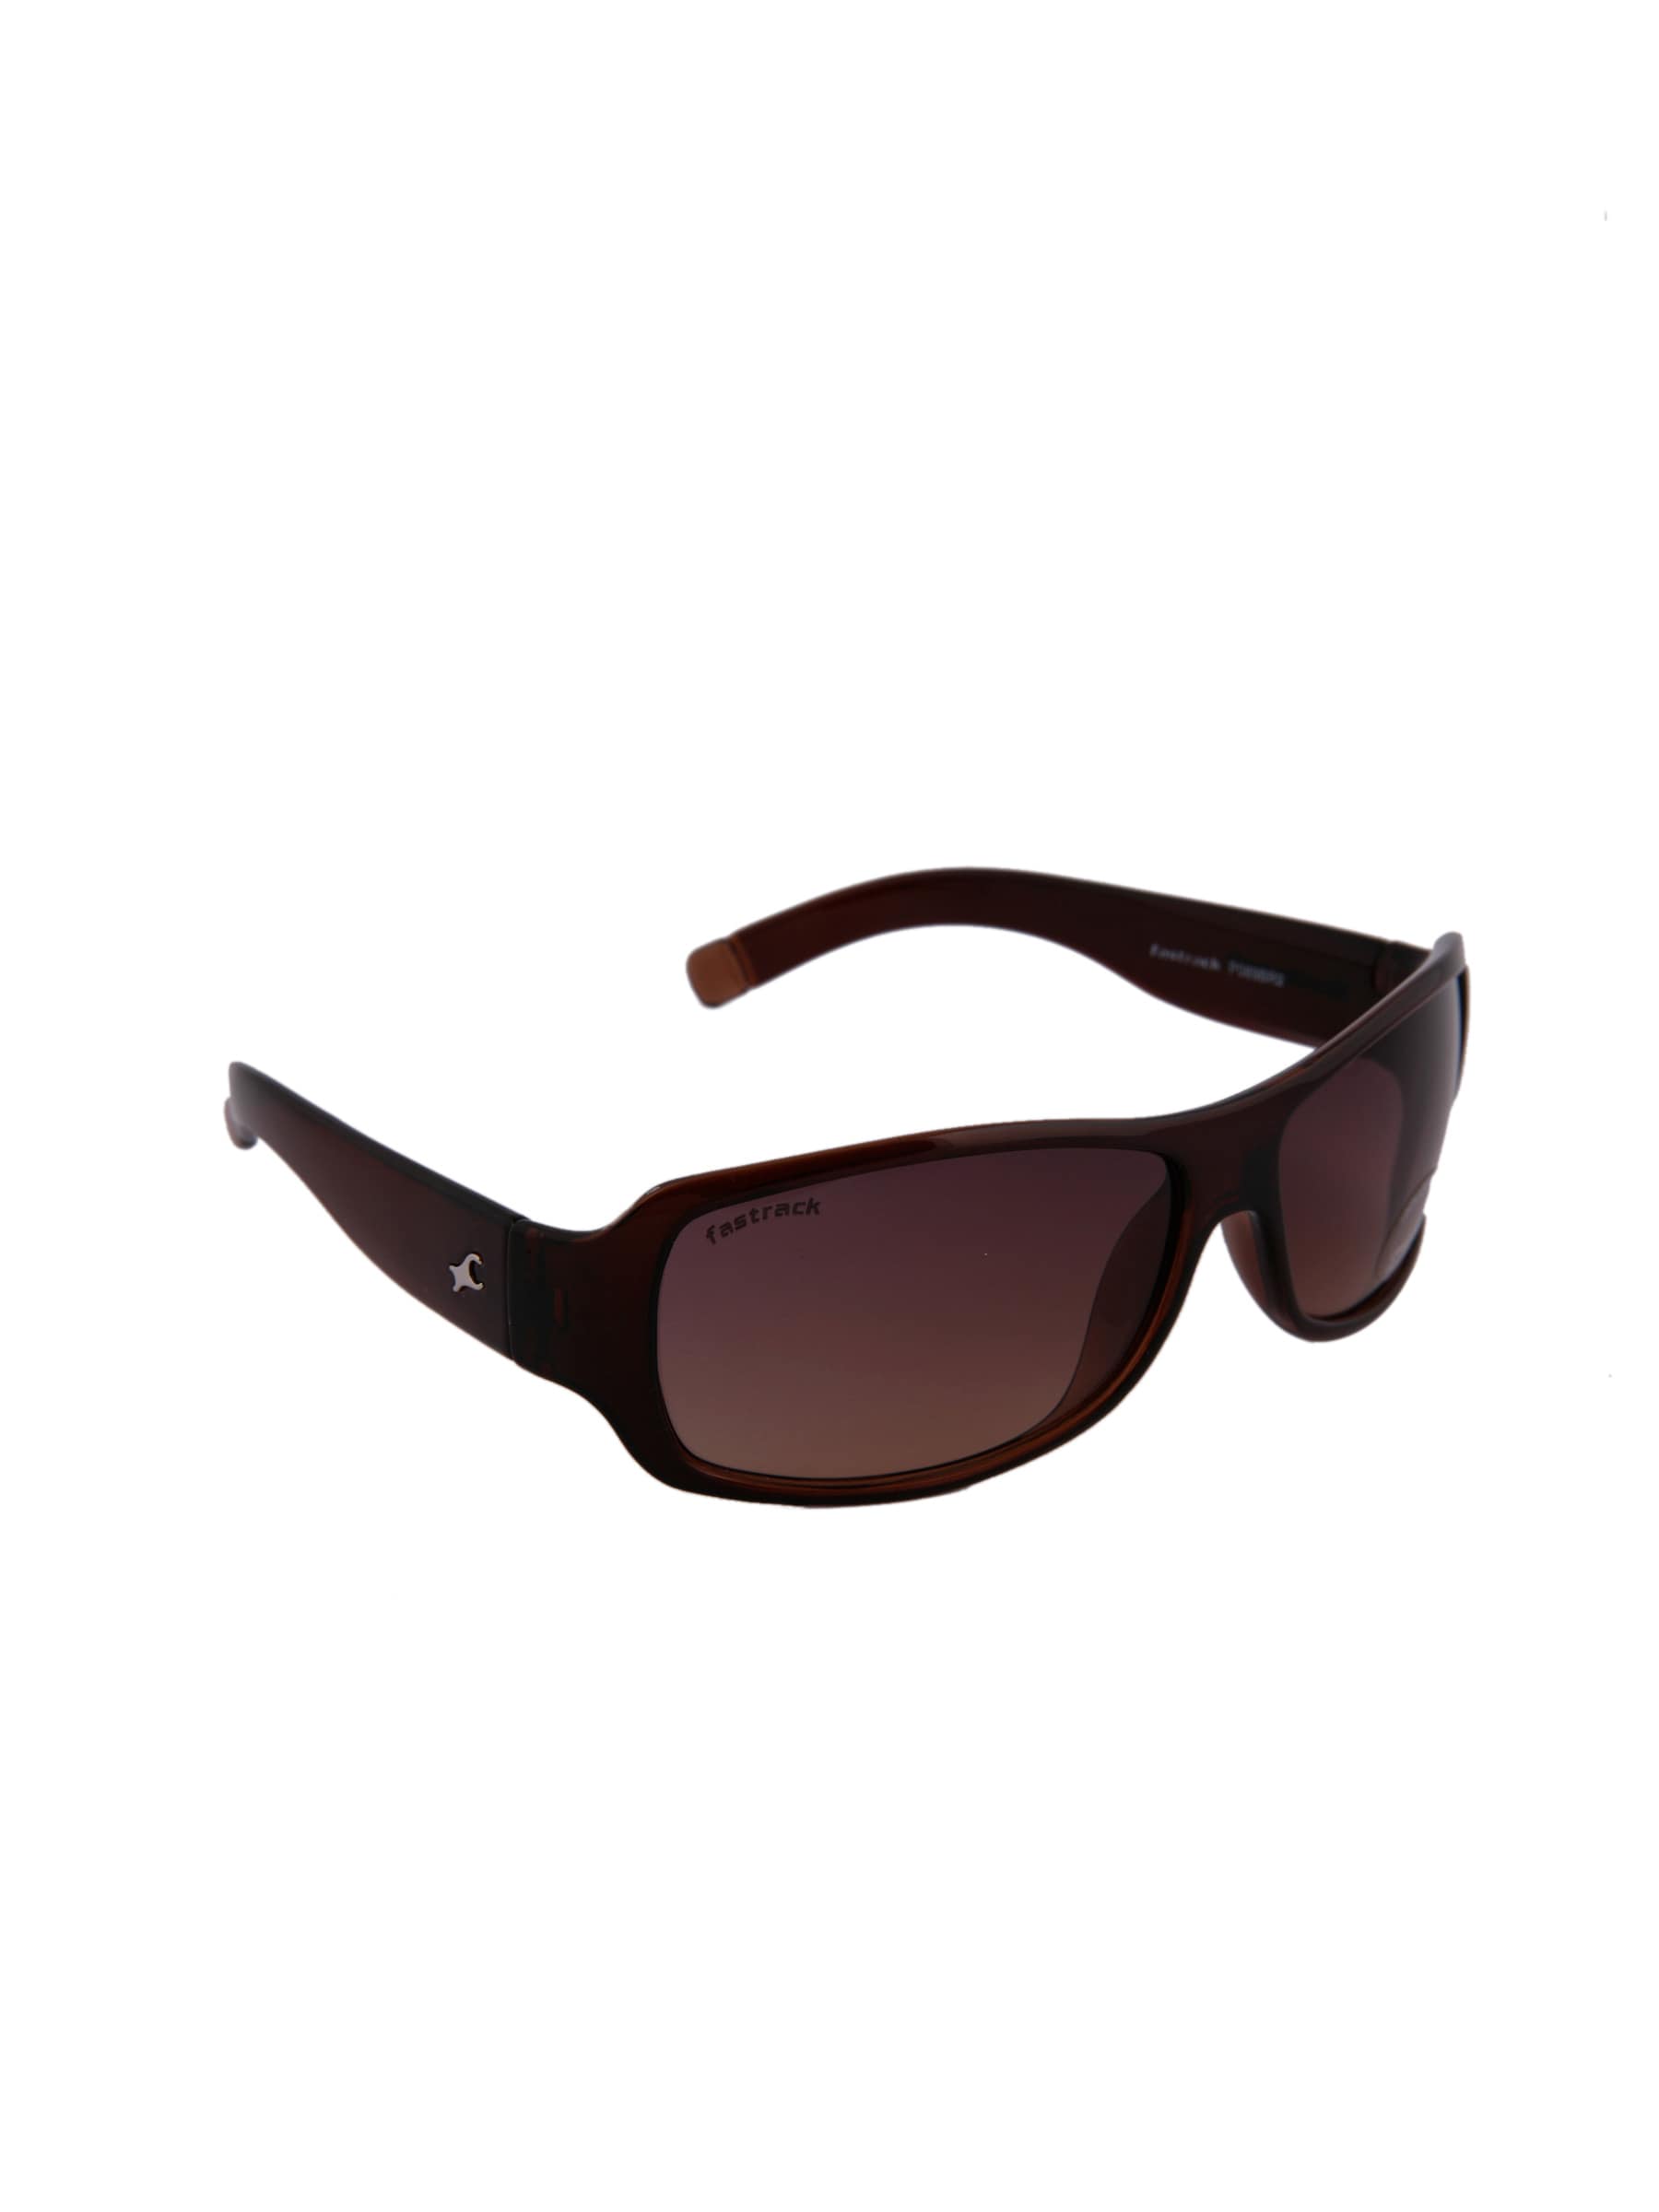 Fastrack Unisex Sunglasses P089BR2